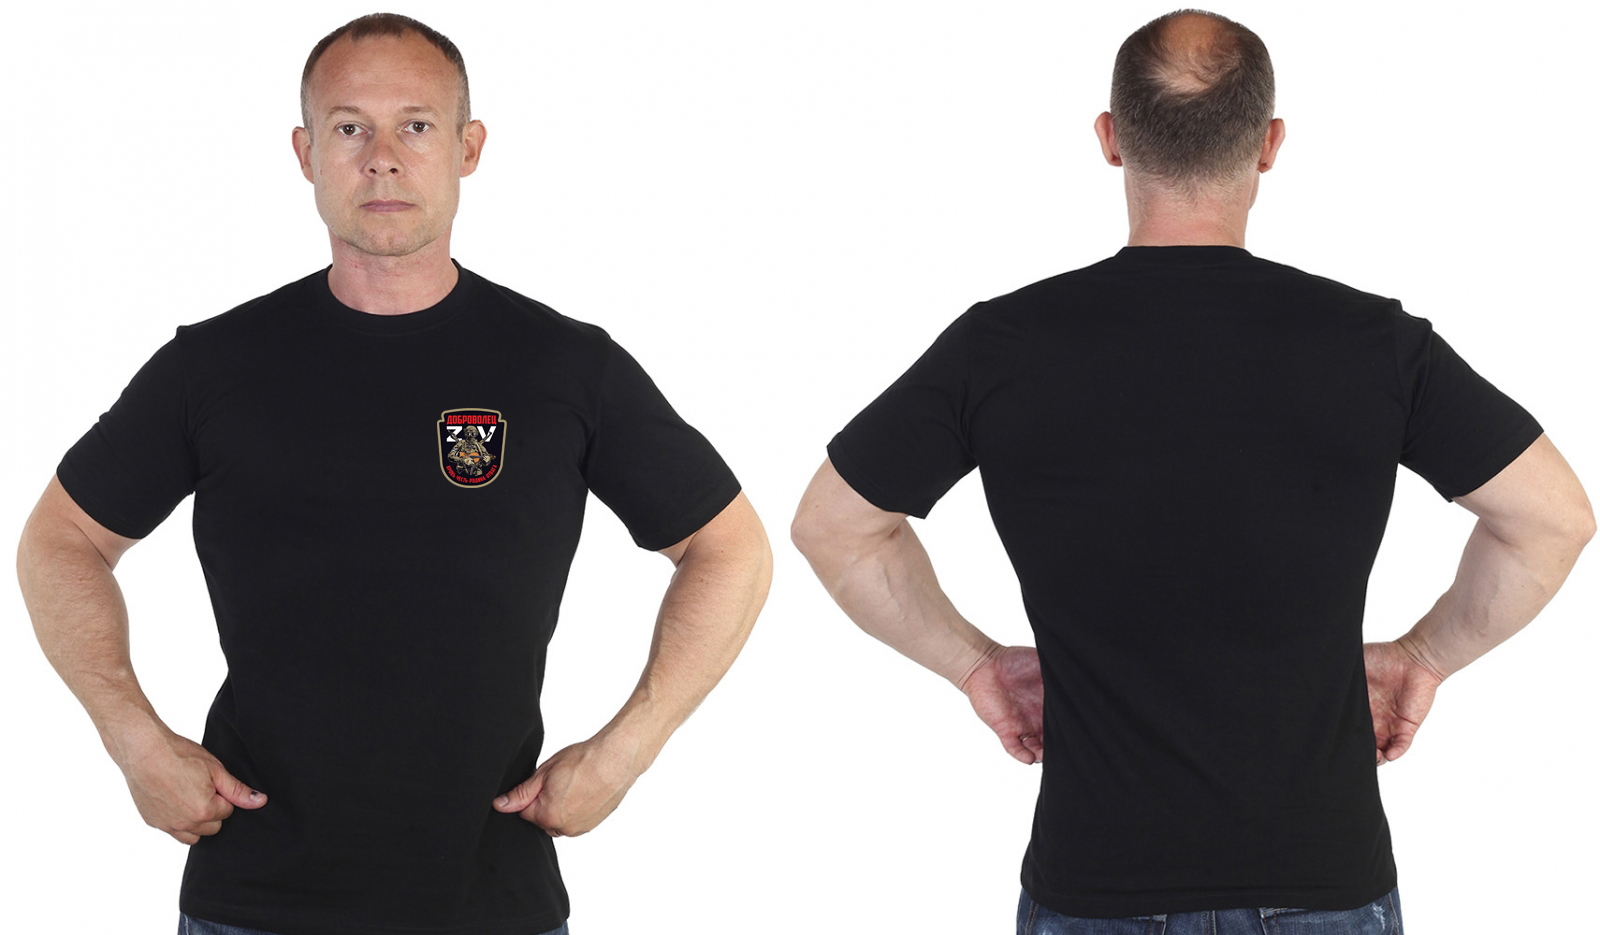 Купить трикотажную черную футболку с термотрансфером Доброволец ZV онлайн